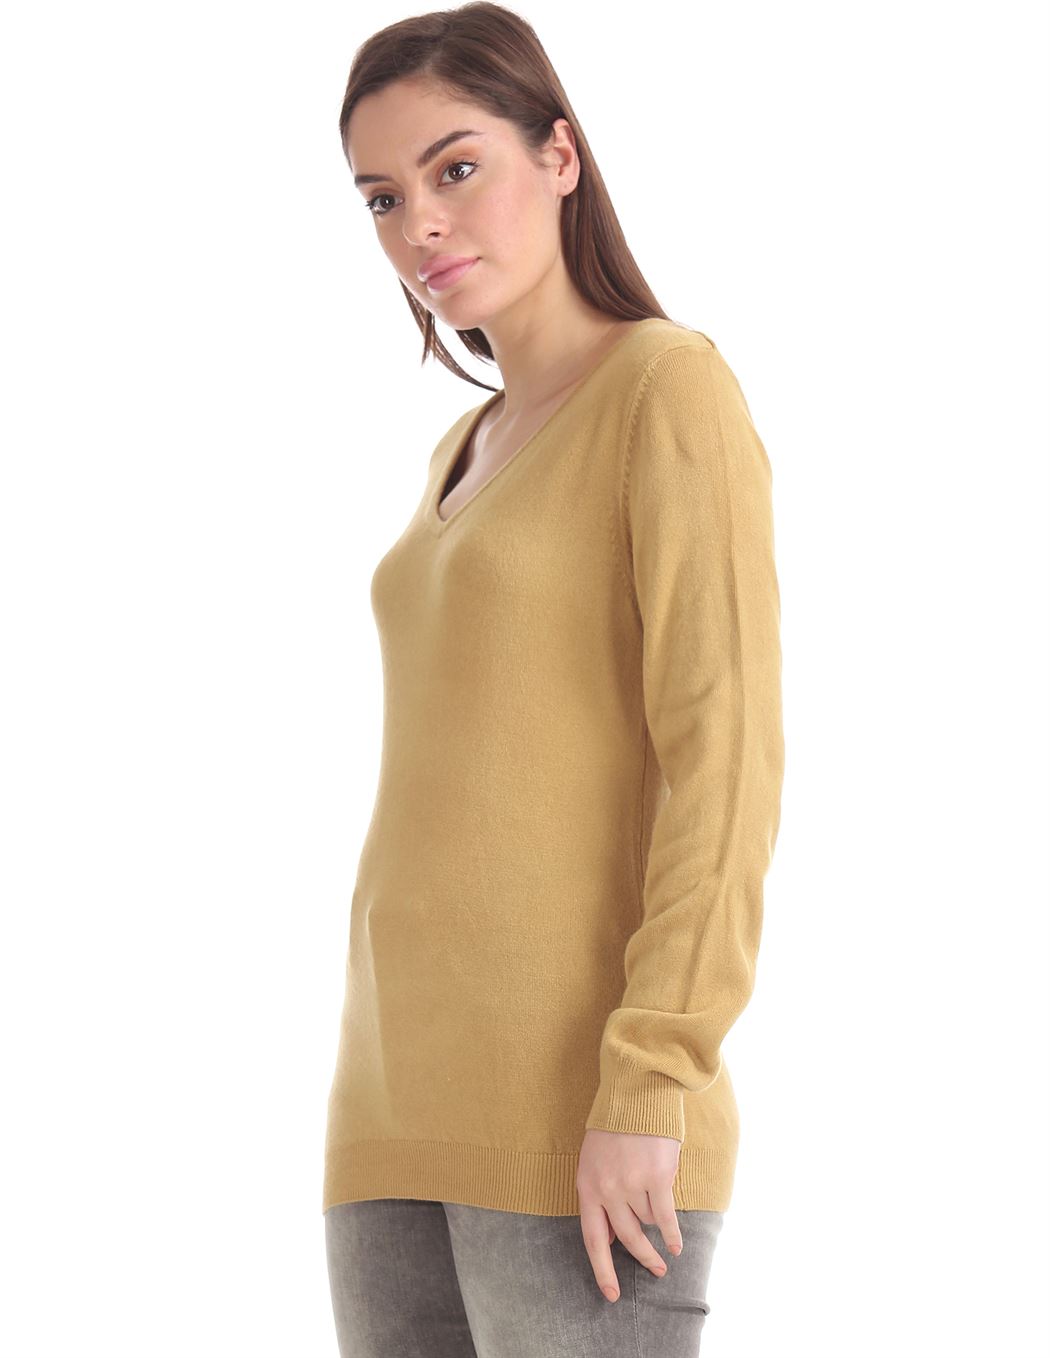 U.S. Polo Assn. Women Casual Wear Solid Sweater